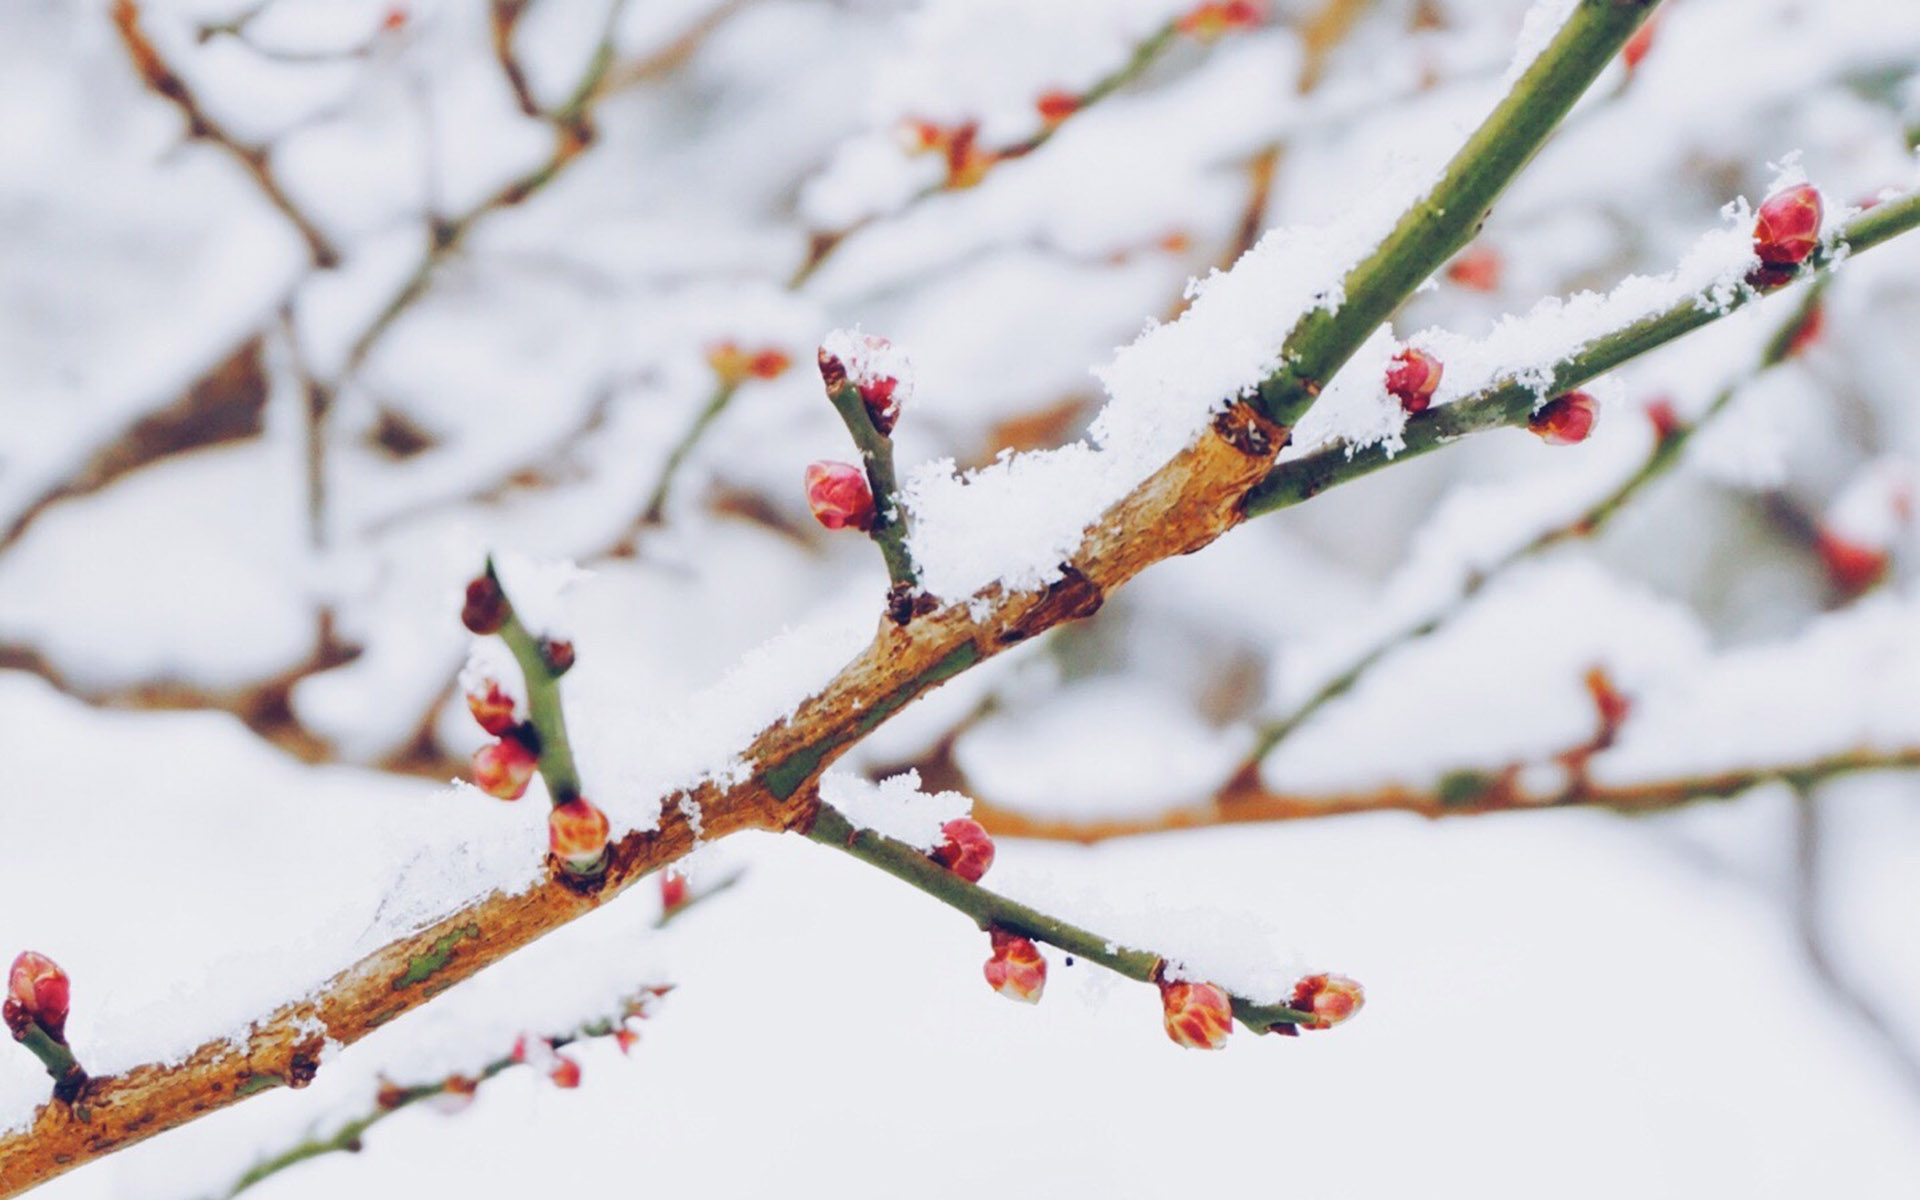 冬天雪景图片大全 冬日雪中植物唯美摄影图片